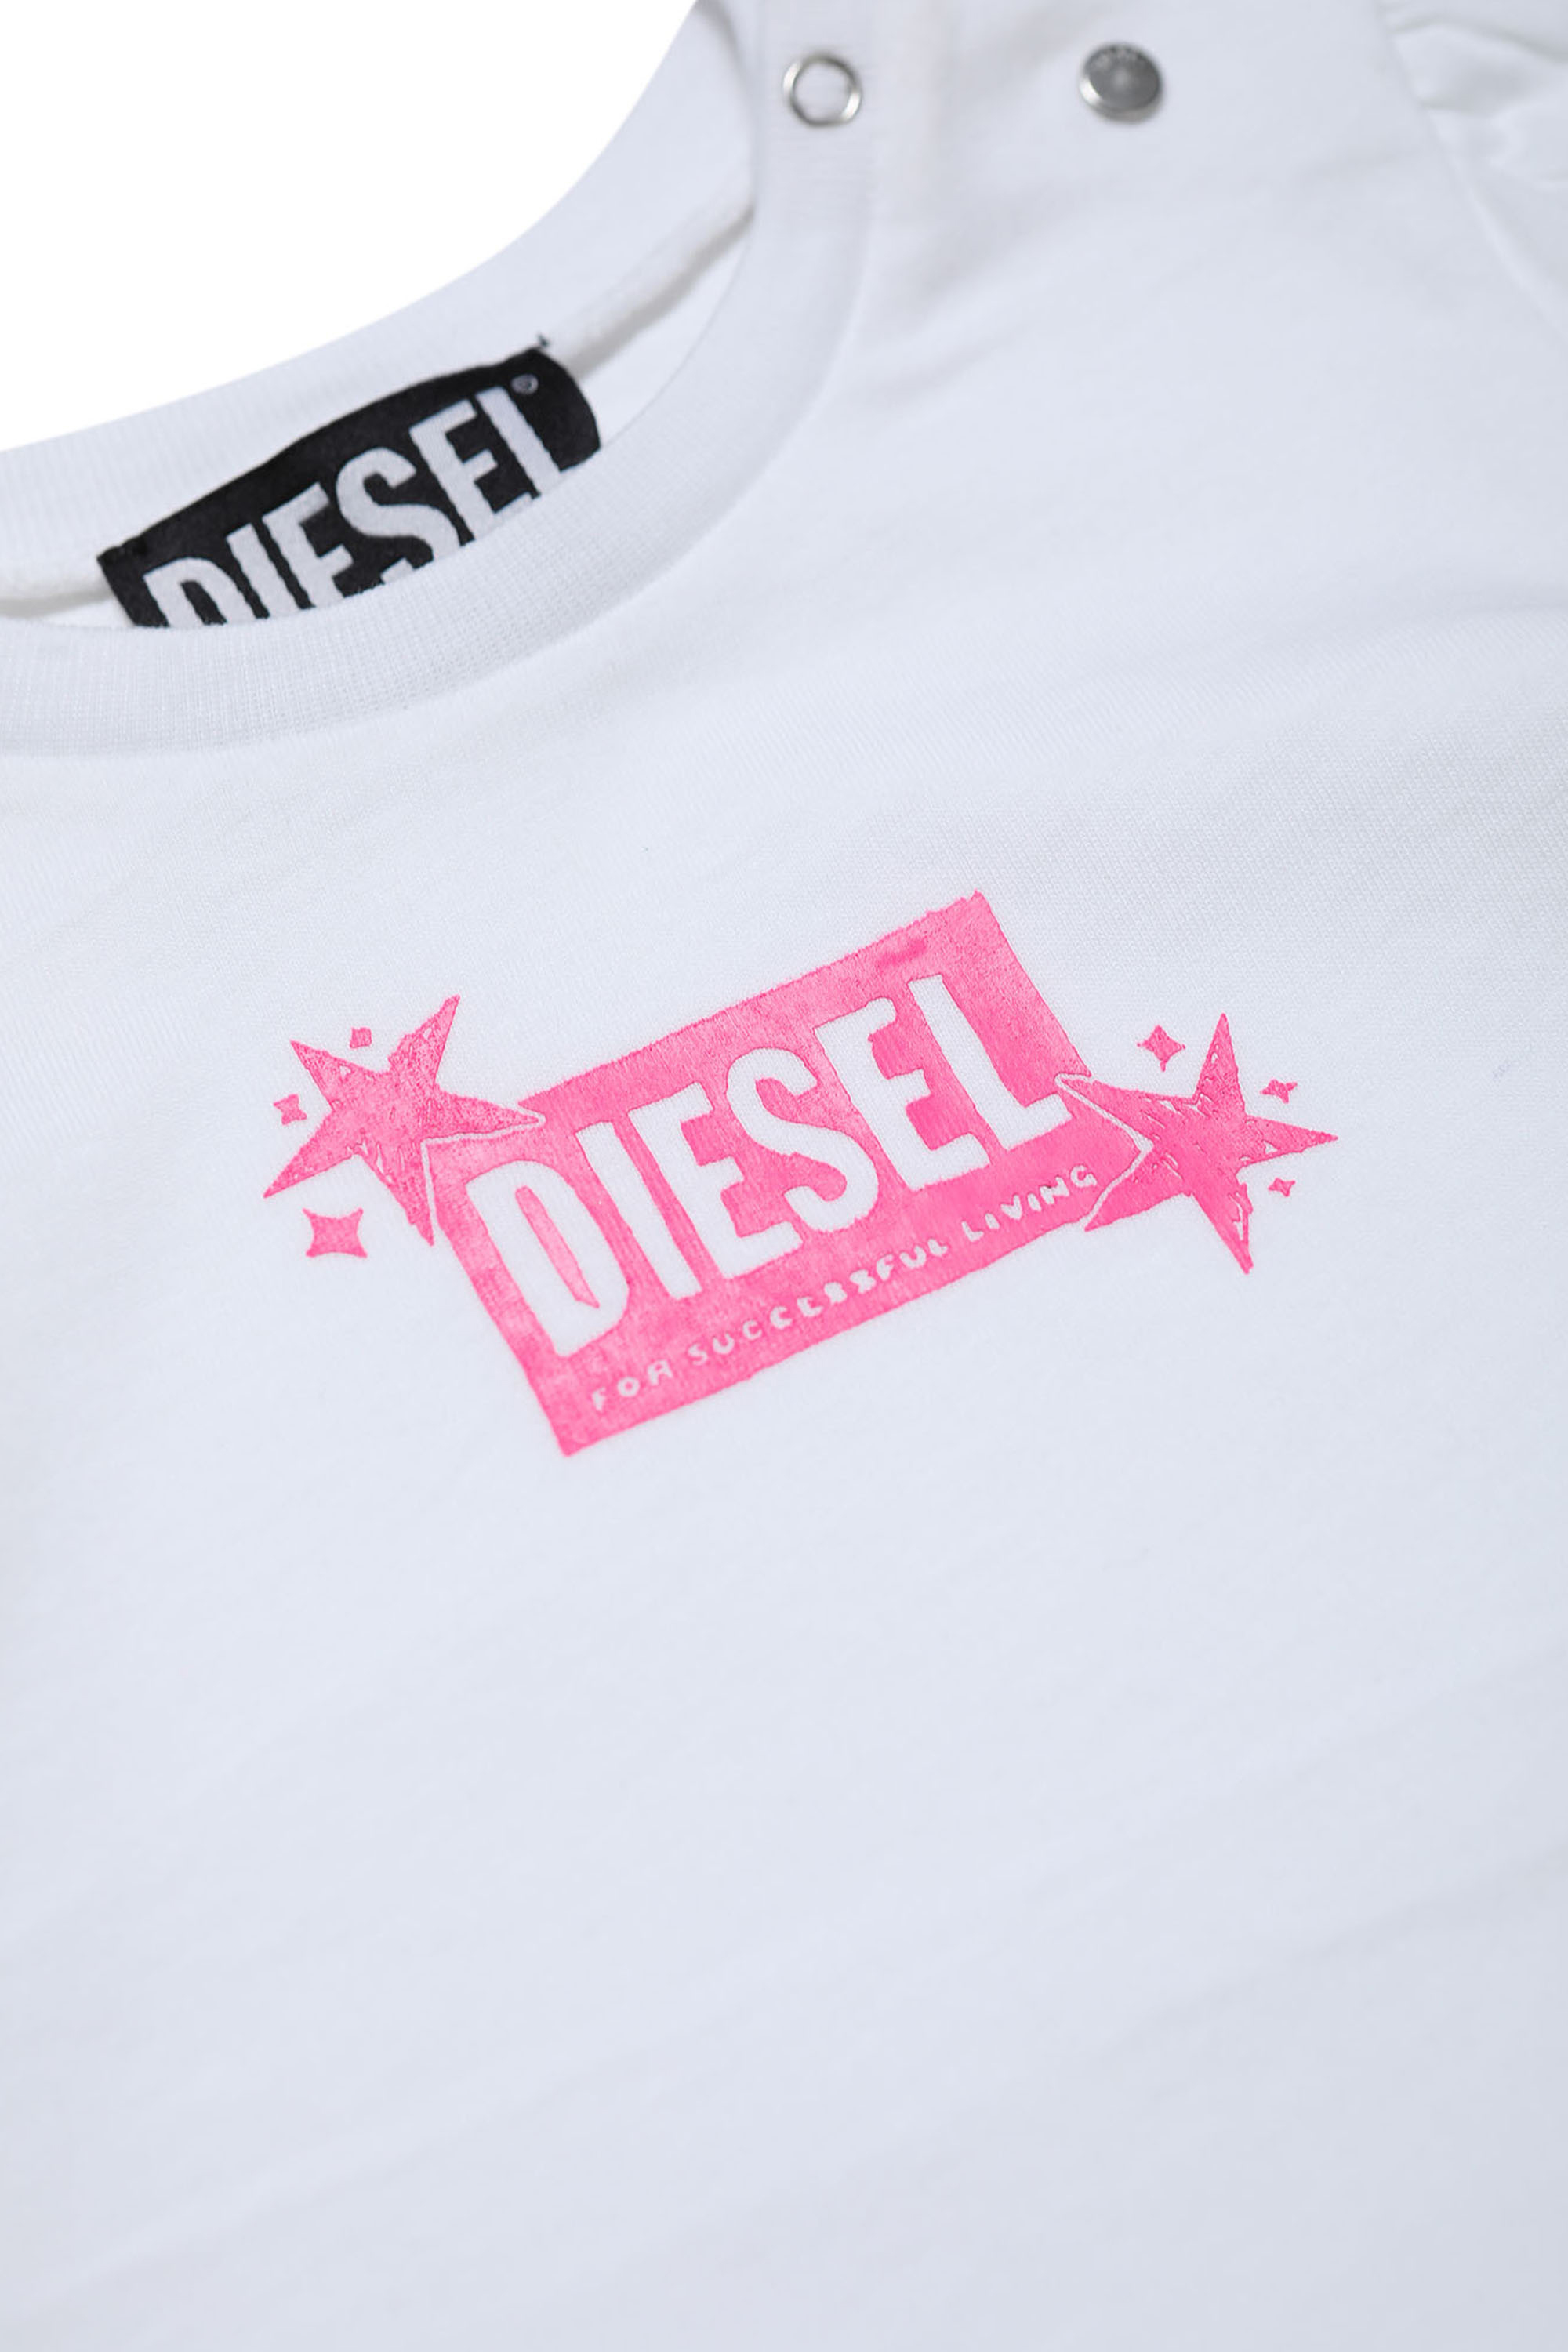 Diesel - TRENB, Blanc - Image 3